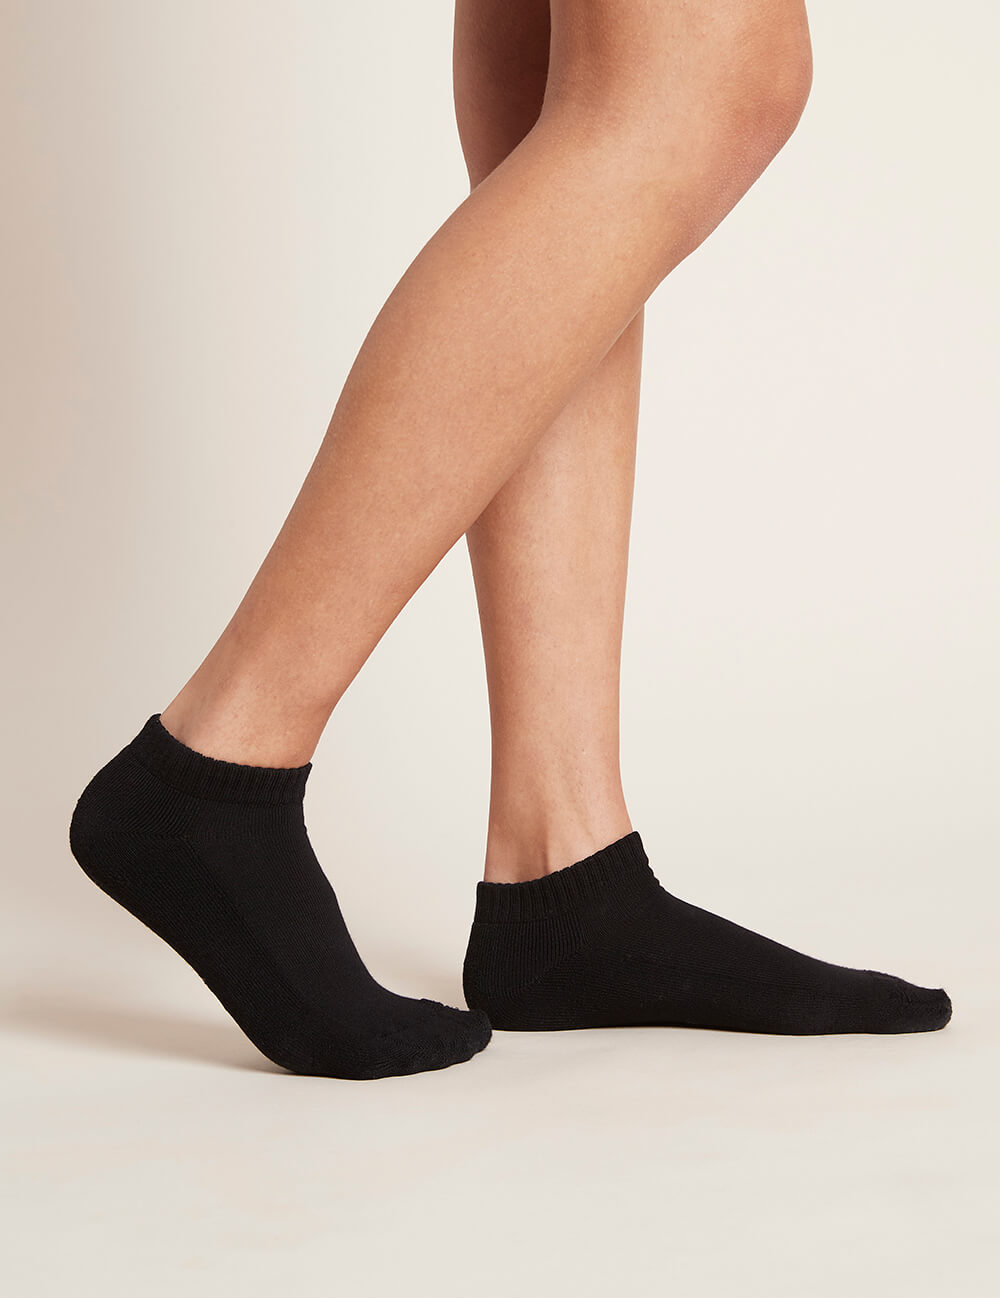 Women_s-Low-Cut-Cushioned-Sneaker-Socks-Black-Side.jpg